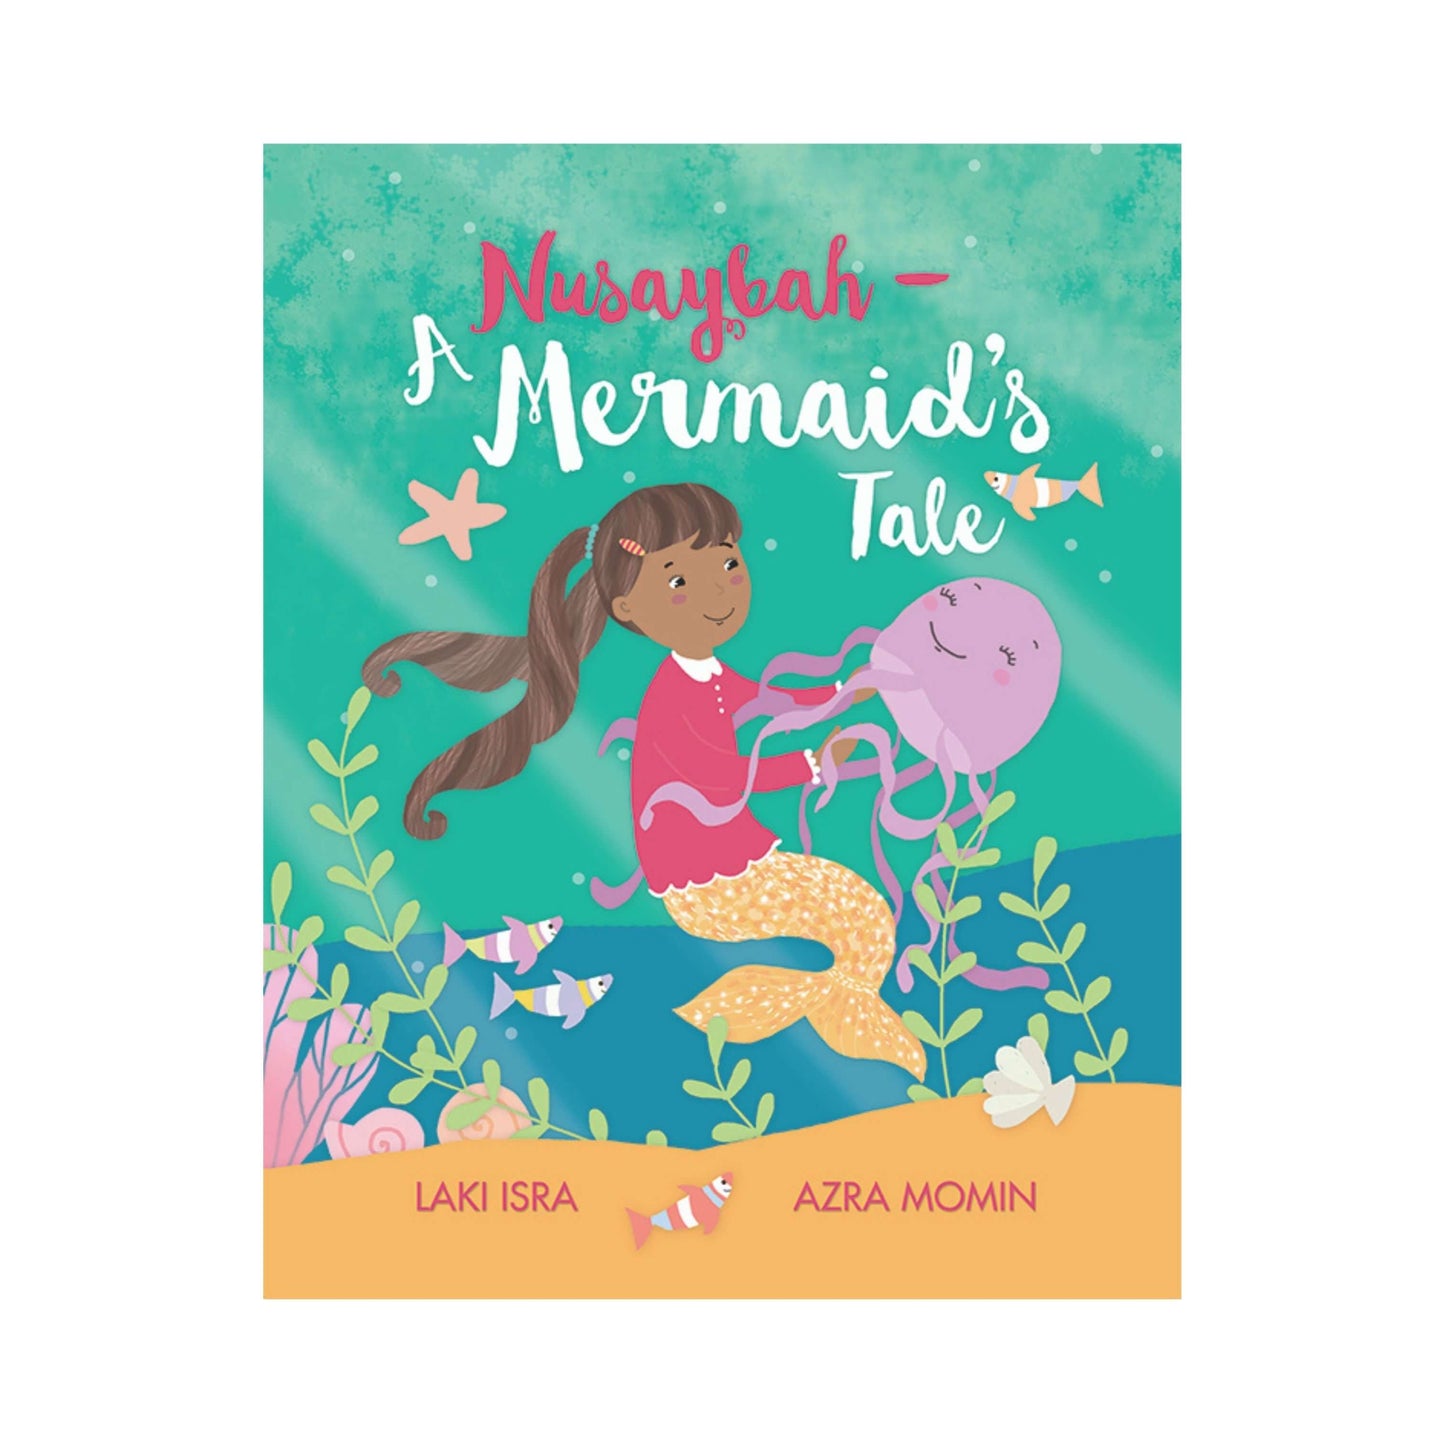 Nusaybah – A Mermaid’s Tale